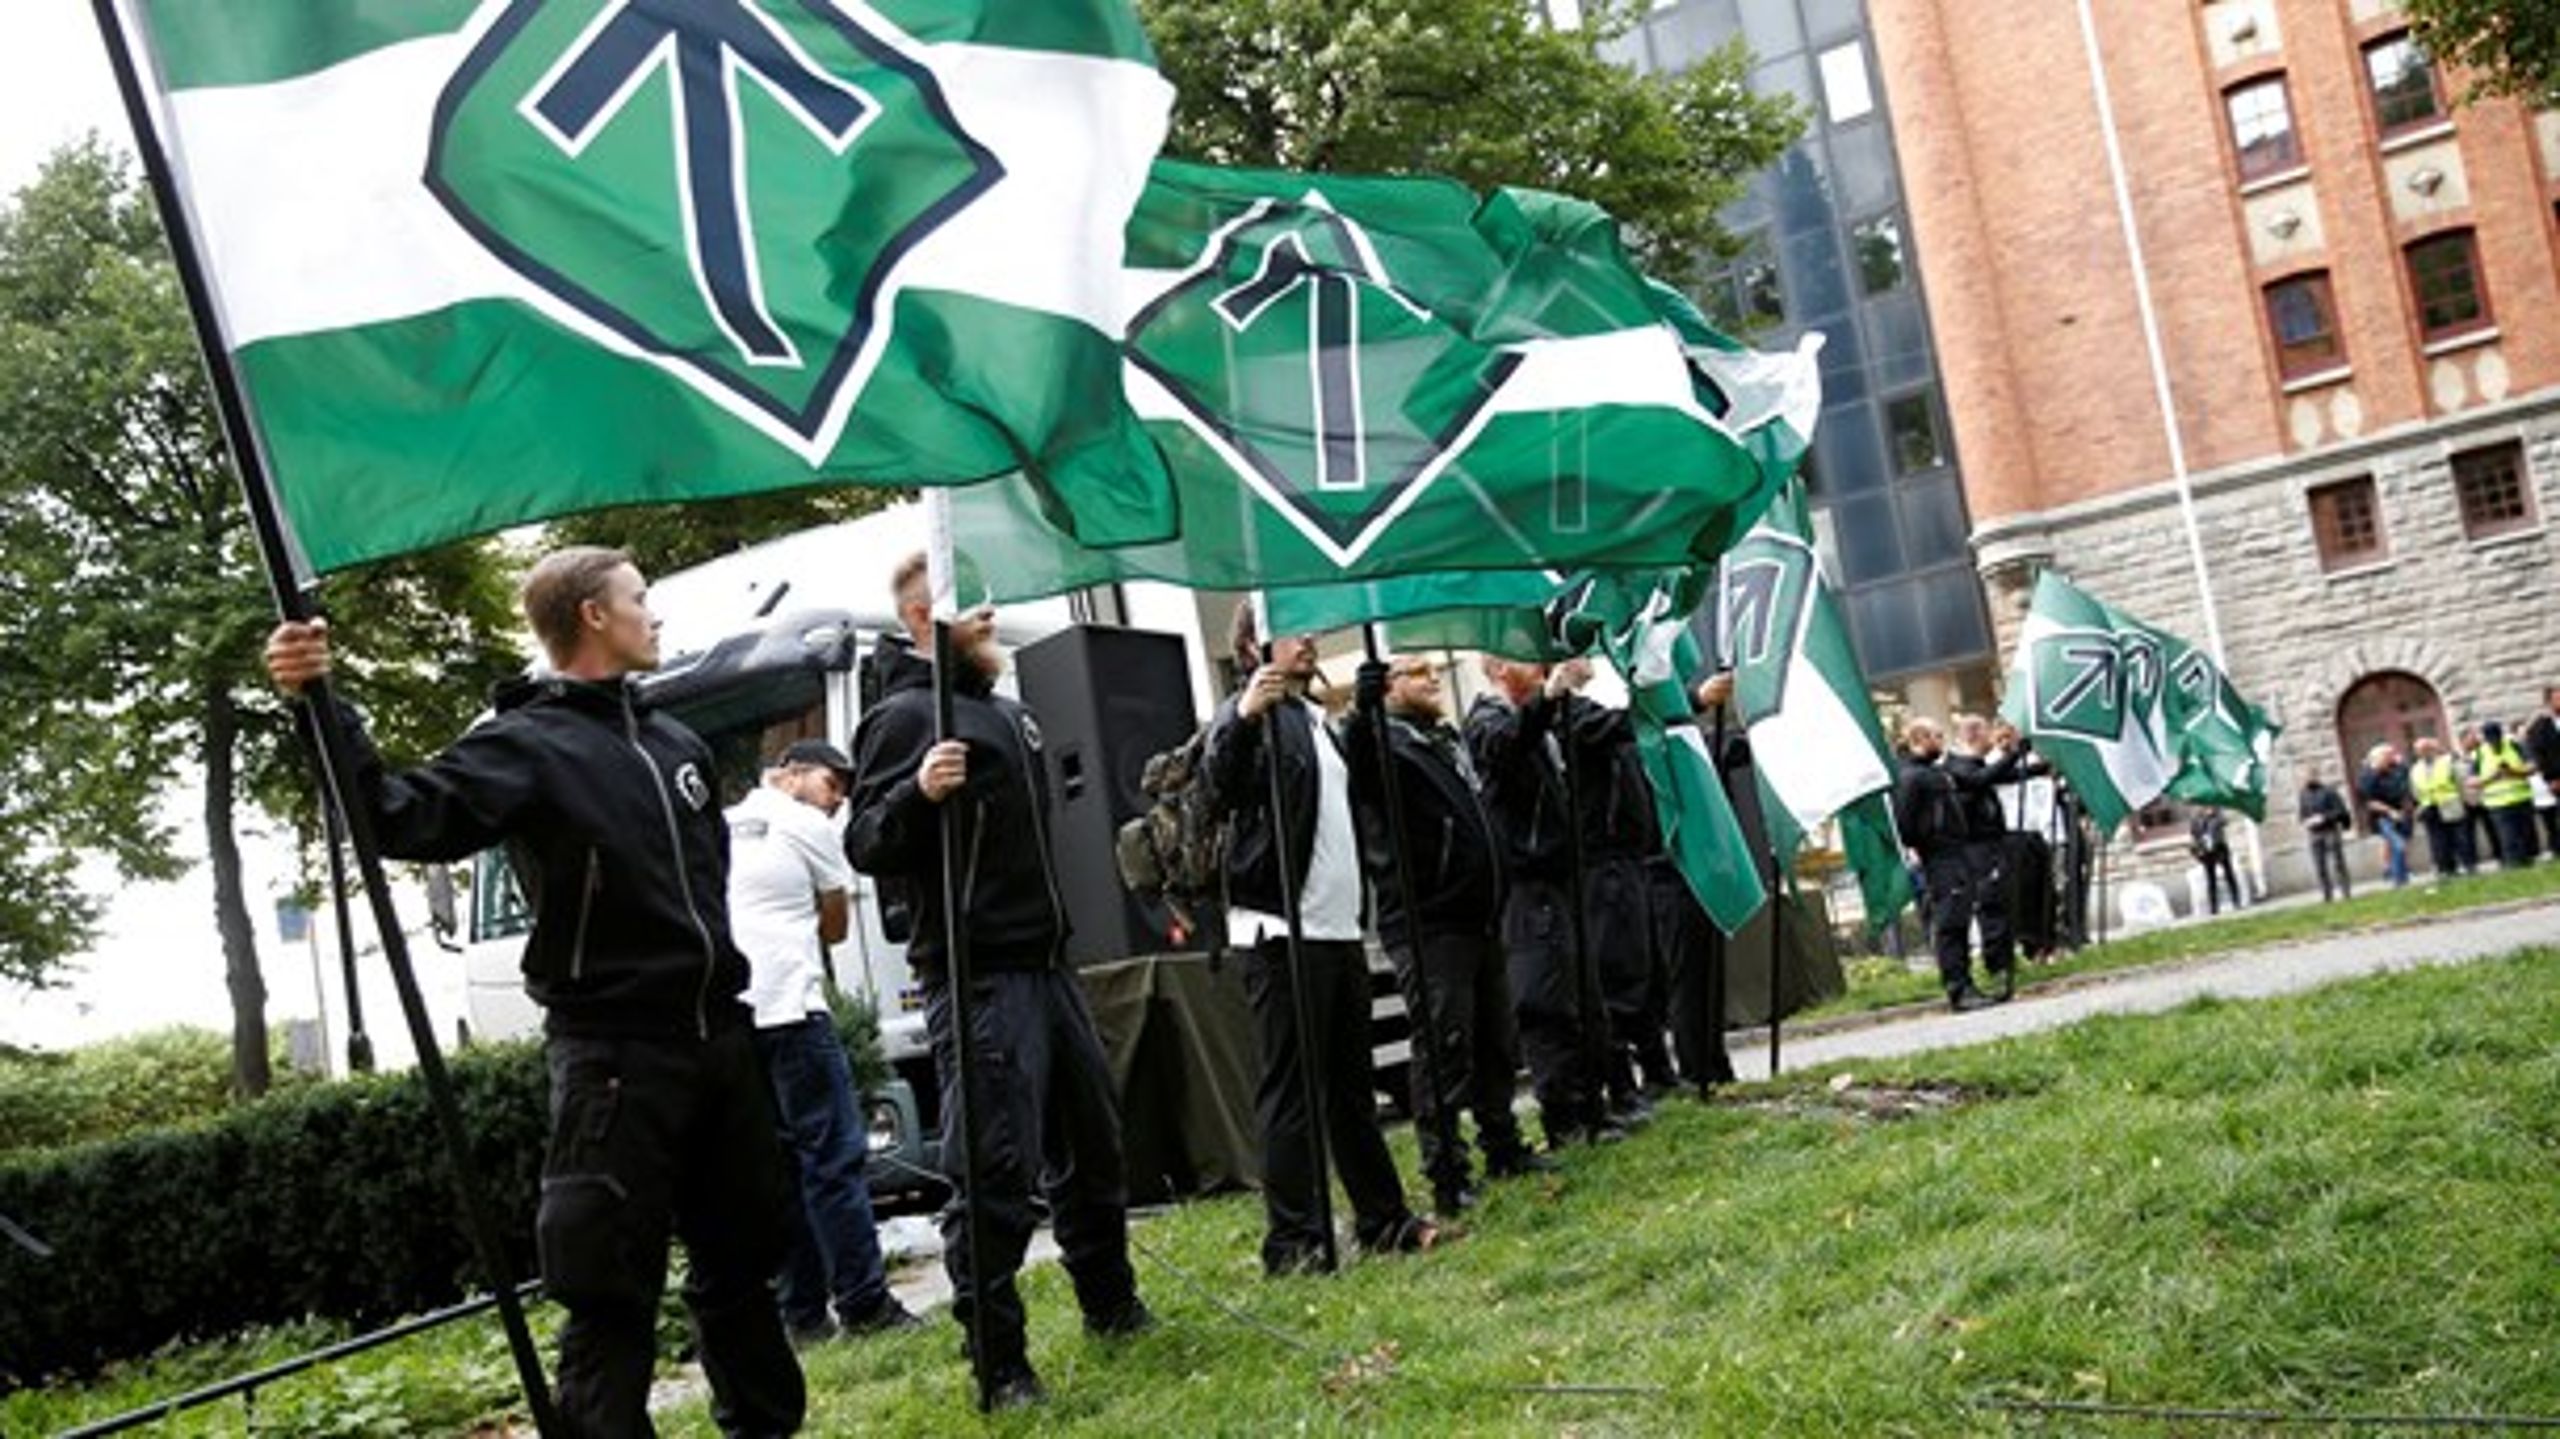 Nordiska motståndsrörelsen (NMR) under en demonstration på&nbsp;Kungsholmstorg i Stockholm, 25 augusti 2018.